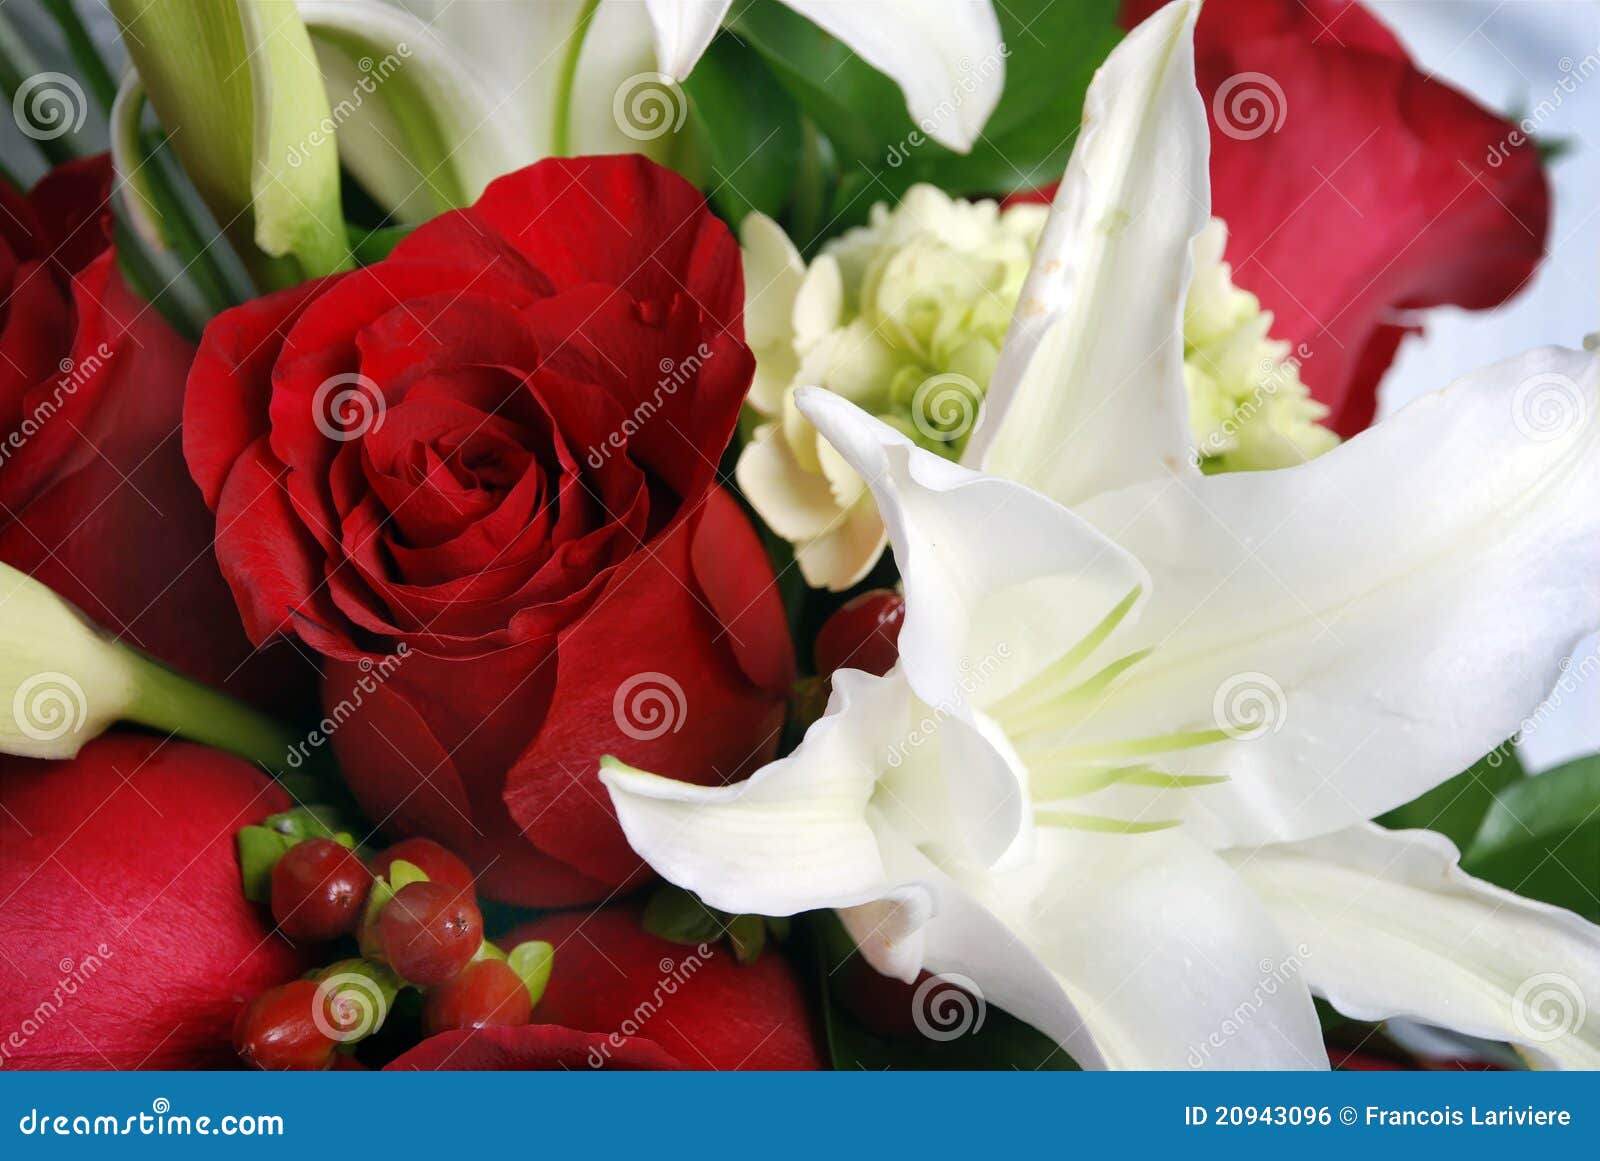 Groupe De Fleurs, De Roses Rouges Et De Lys Blancs Photo stock - Image du  créateur, bouquet: 20943096